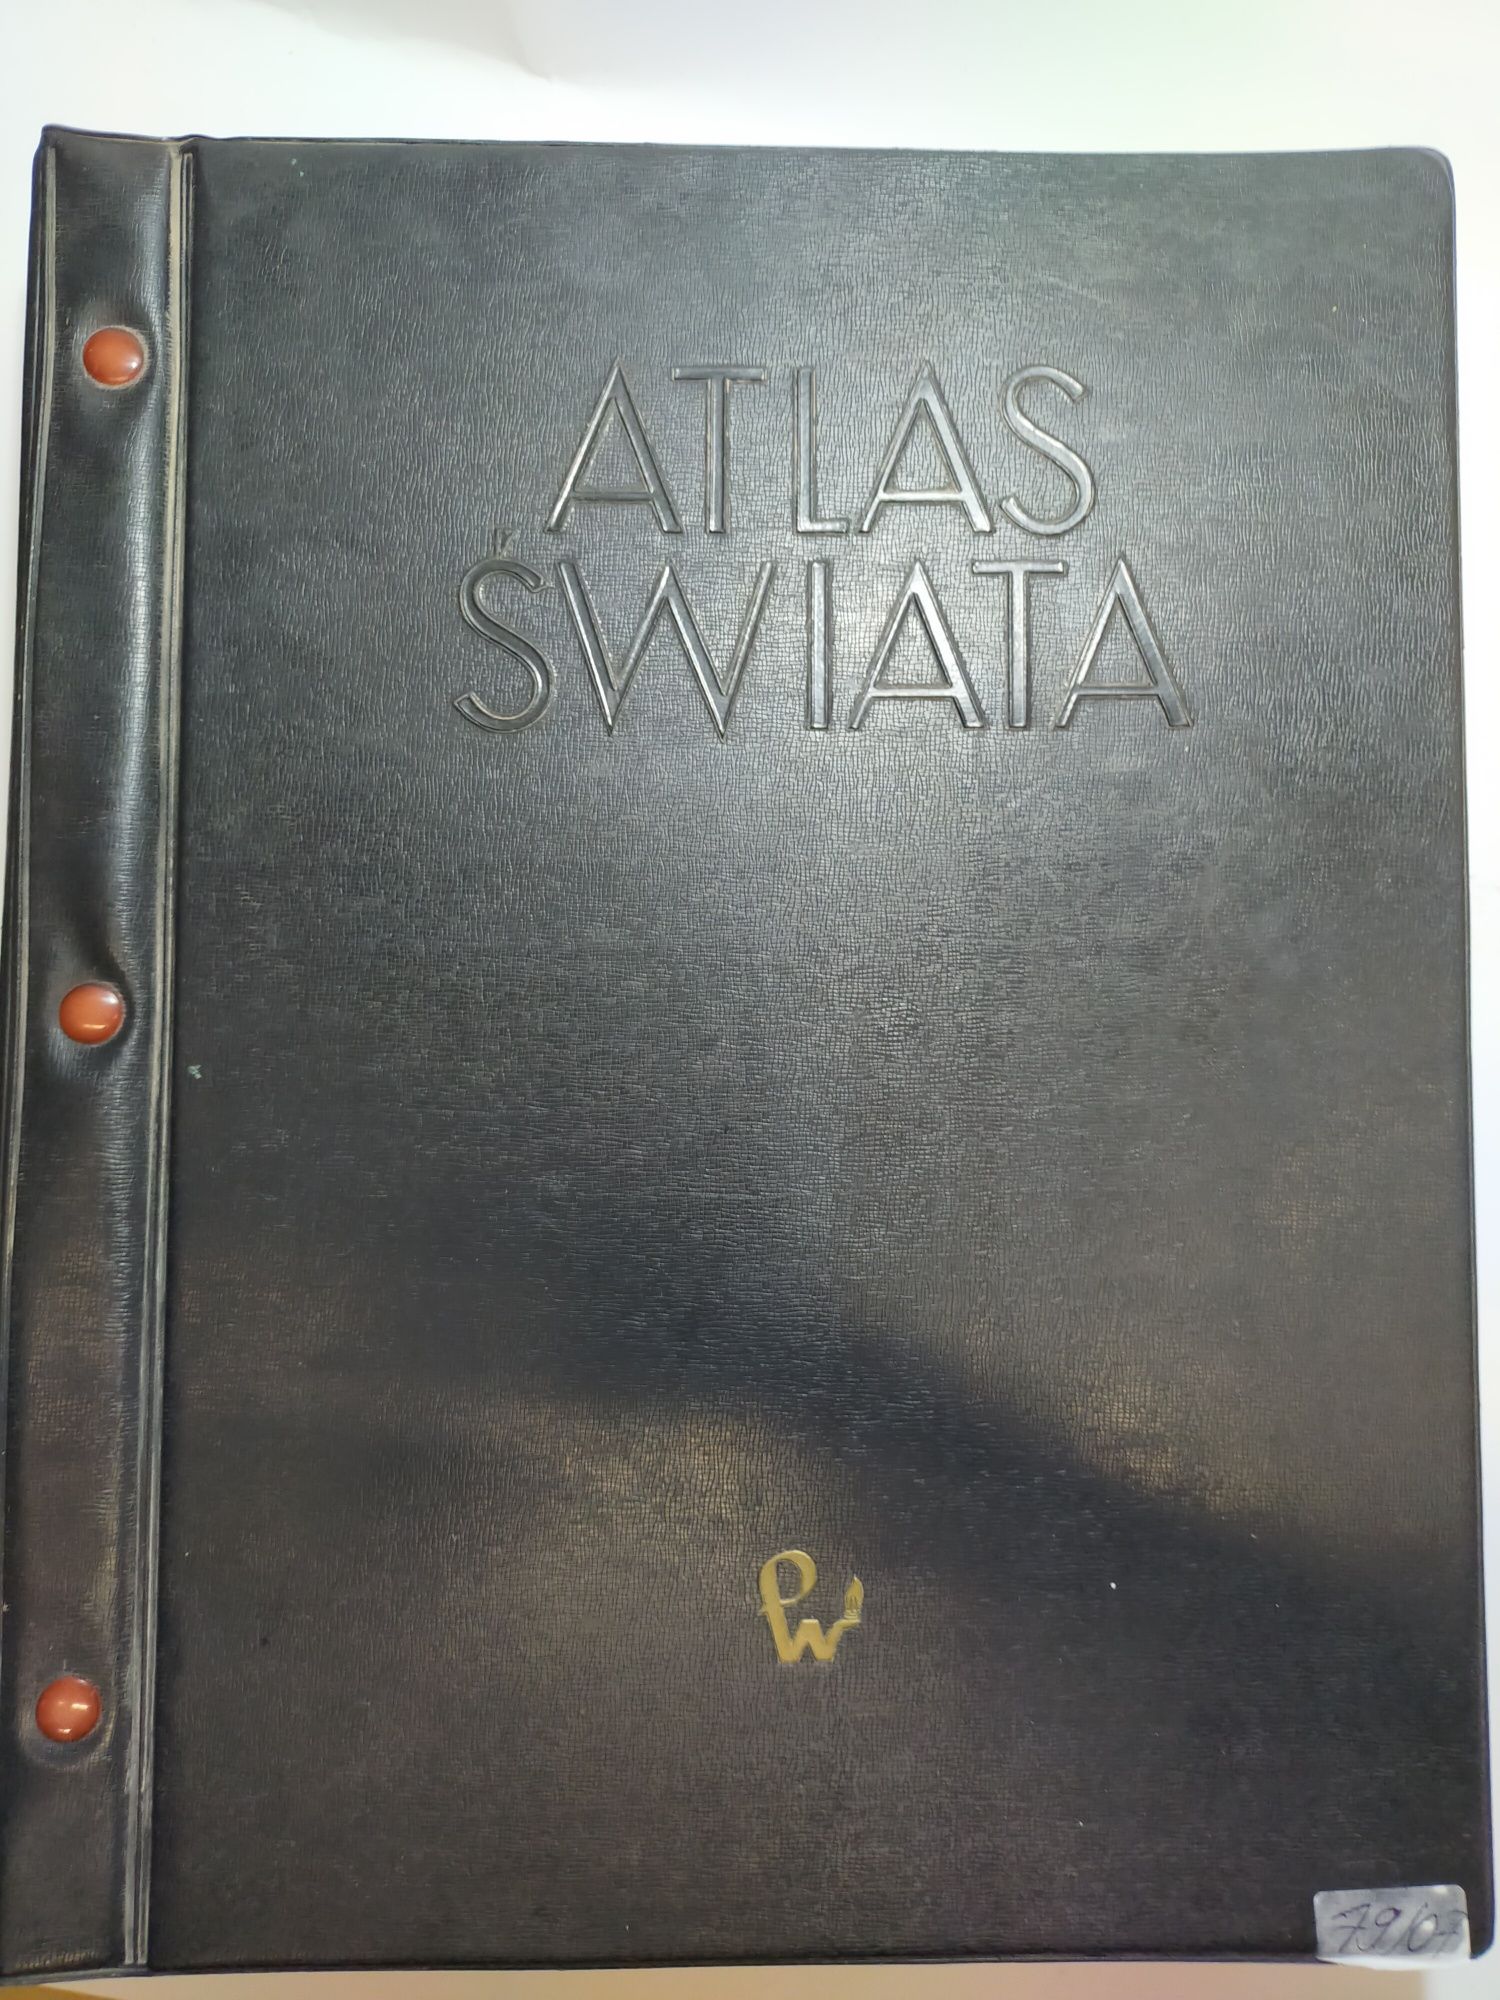 Atlas świata PWN UNIKAT wydanie zbiorowe 1962 r